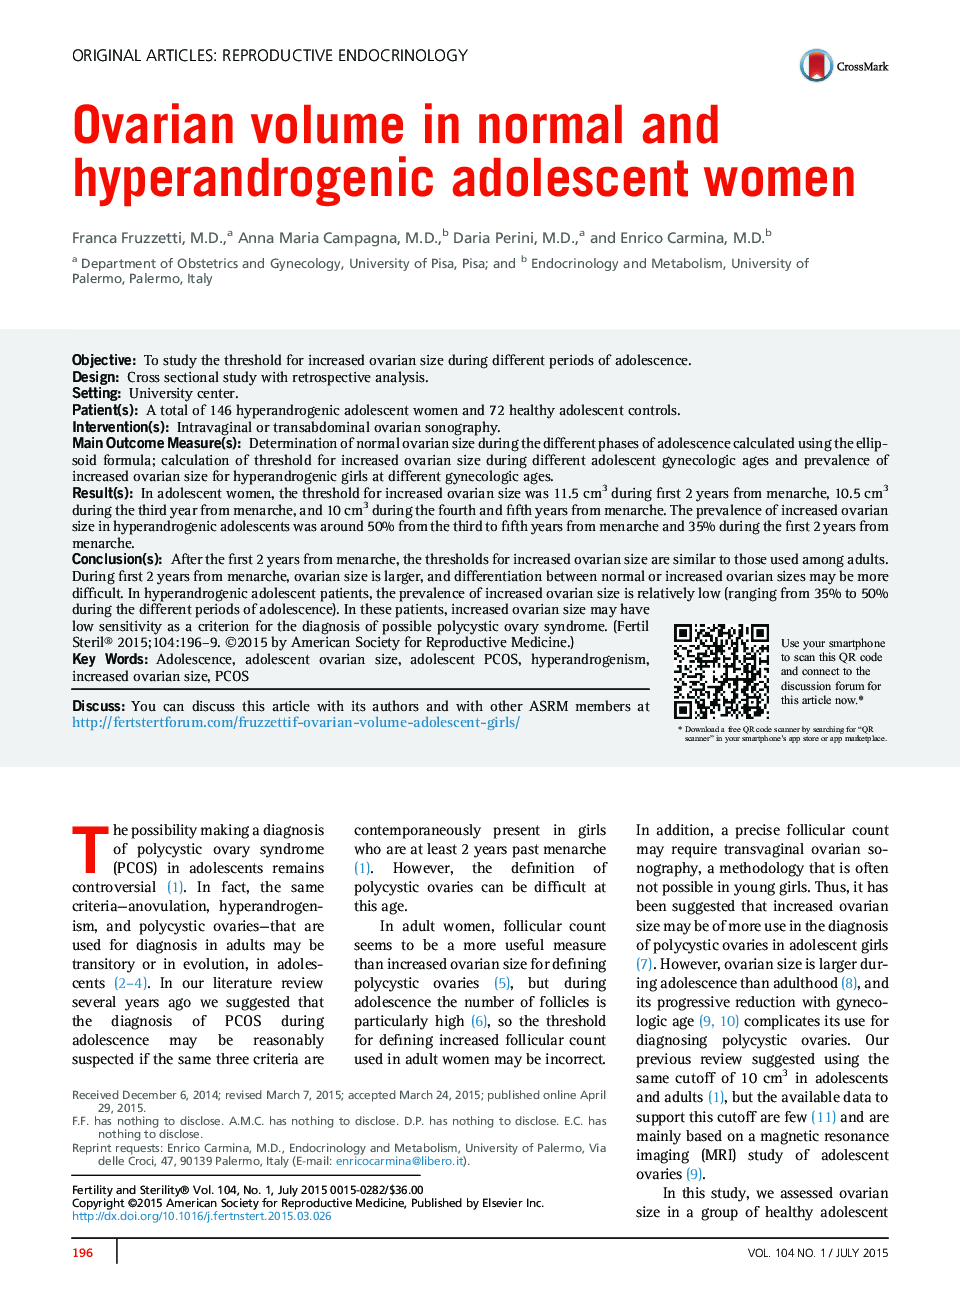 حجم تخمدان در زنان نوجوانی معمولی و پرآرنگروژنیک 